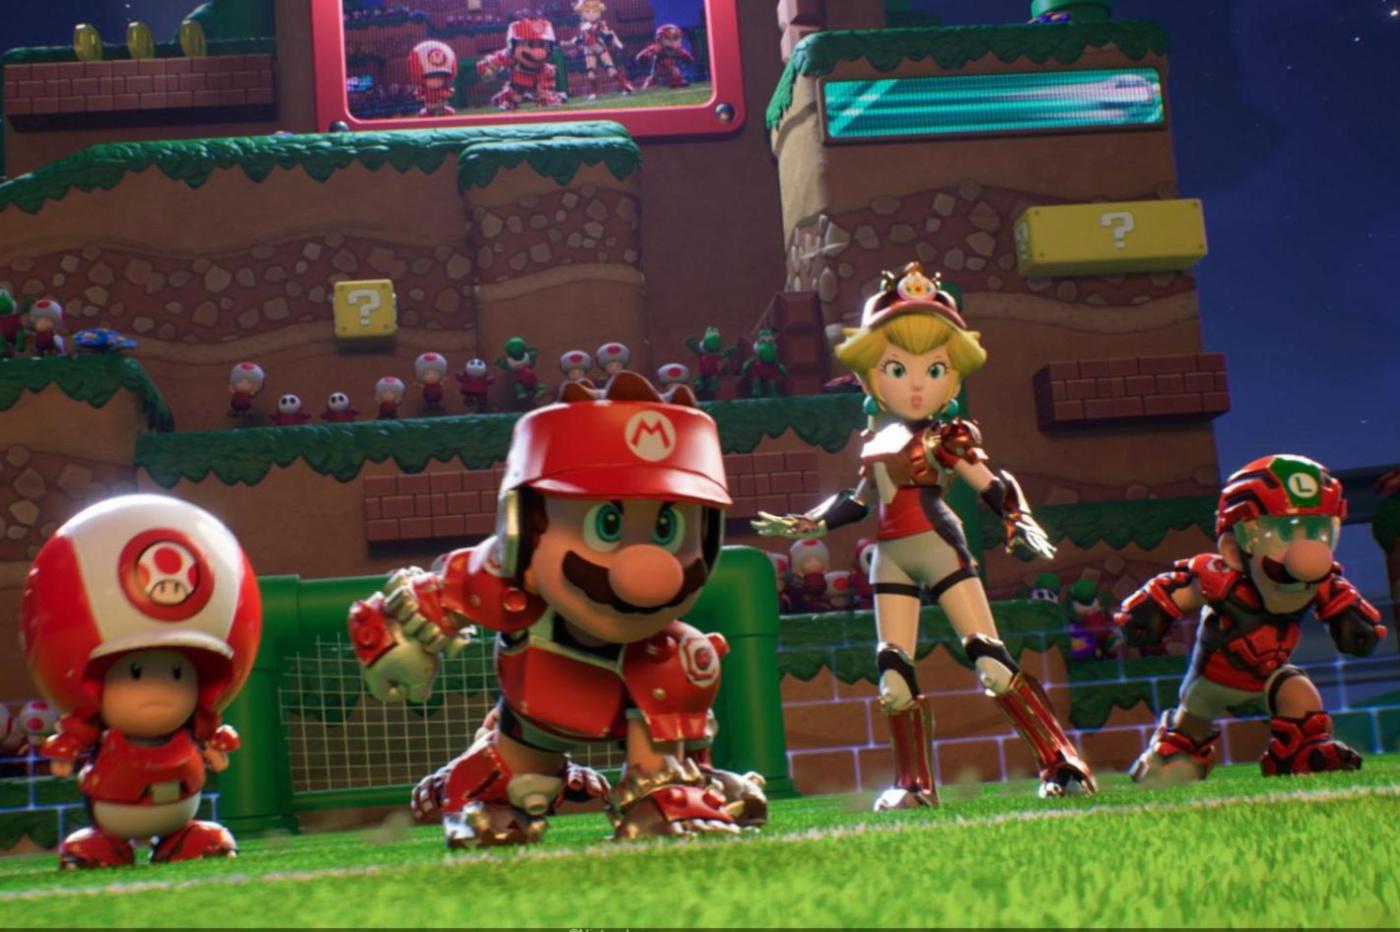 Capture d'écran du trailer de gameplay de Mario Strikers Football pour la Switch montrant Toad, Mario, peach et Luigi en équipements